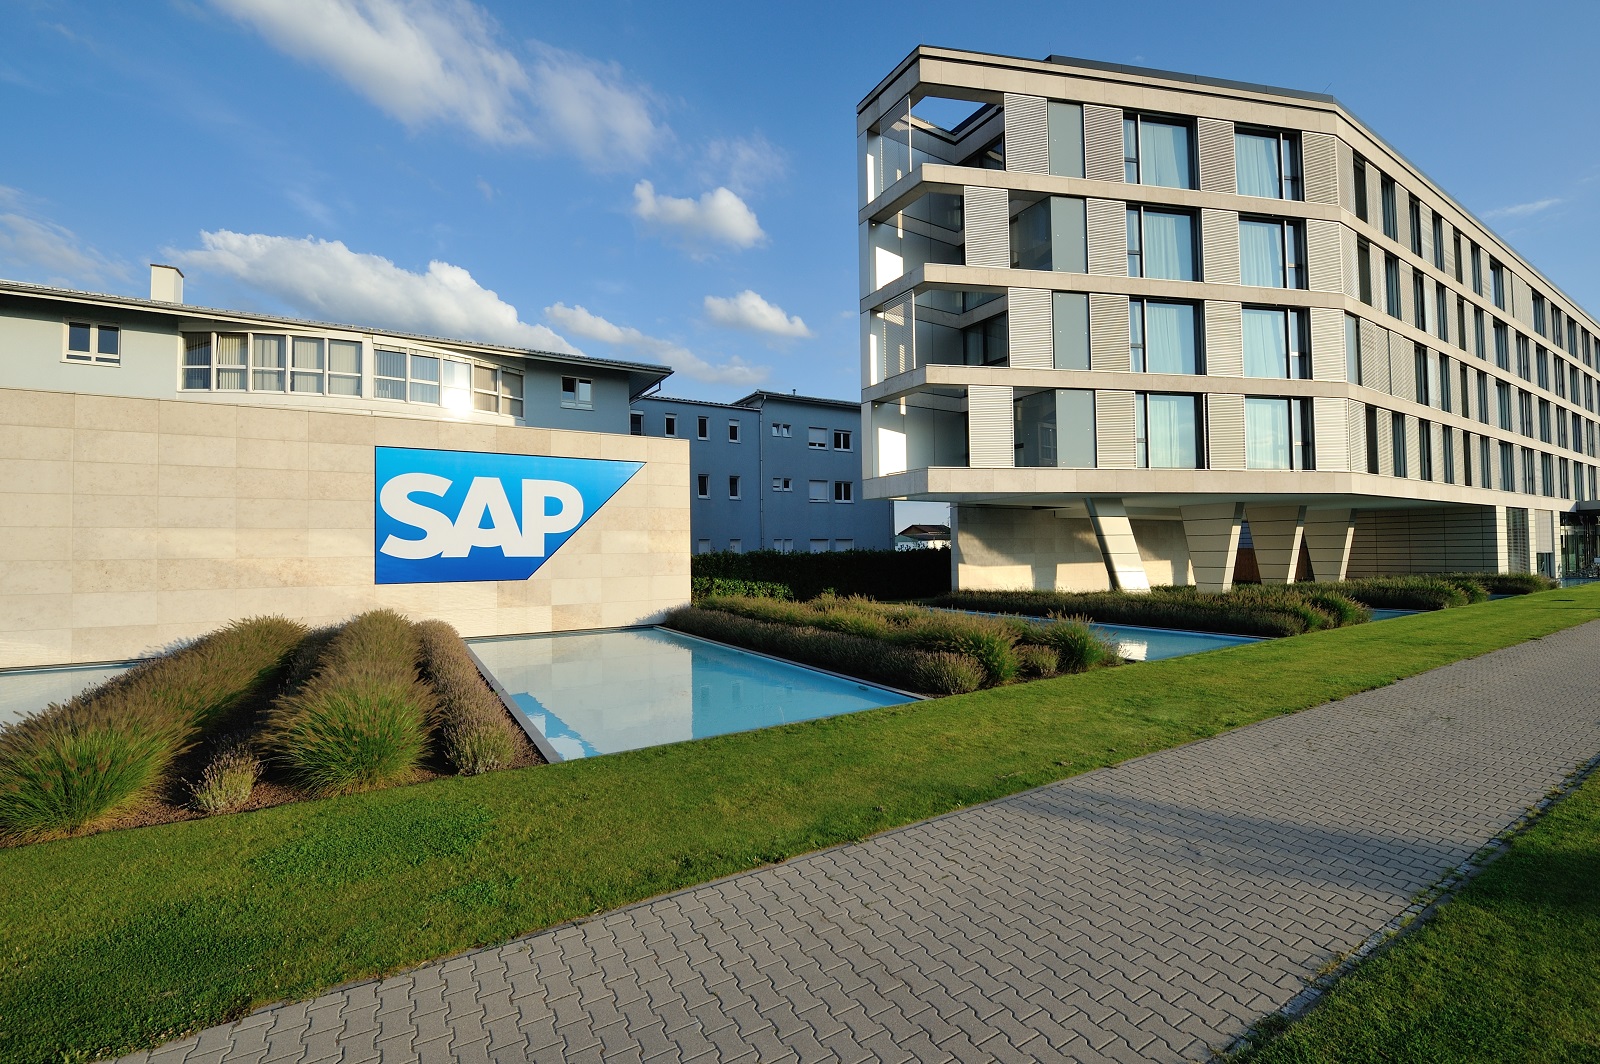 Joule, noul asistent SAP bazat pe inteligență artificială generativă